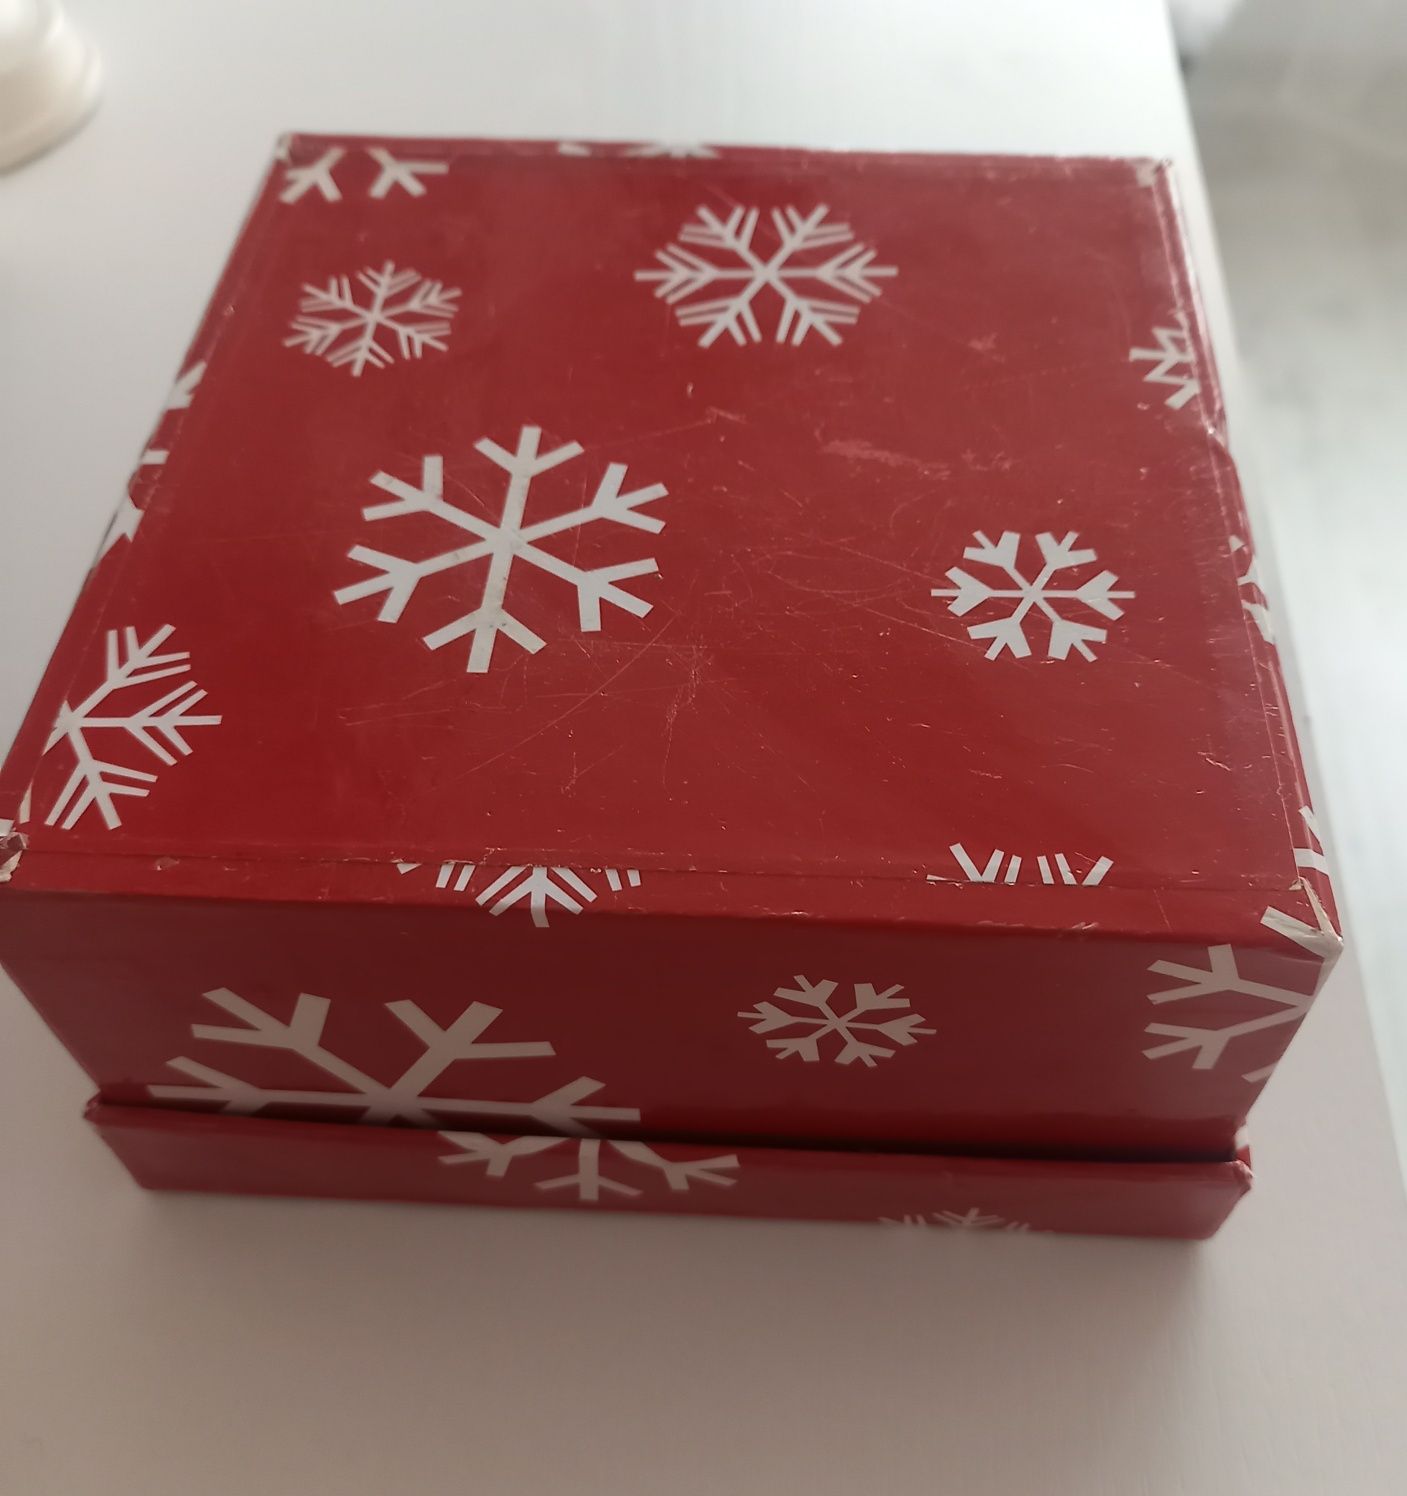 Pudełko tekturowe kwadratowe vintage czerwone w białe śnieżynki